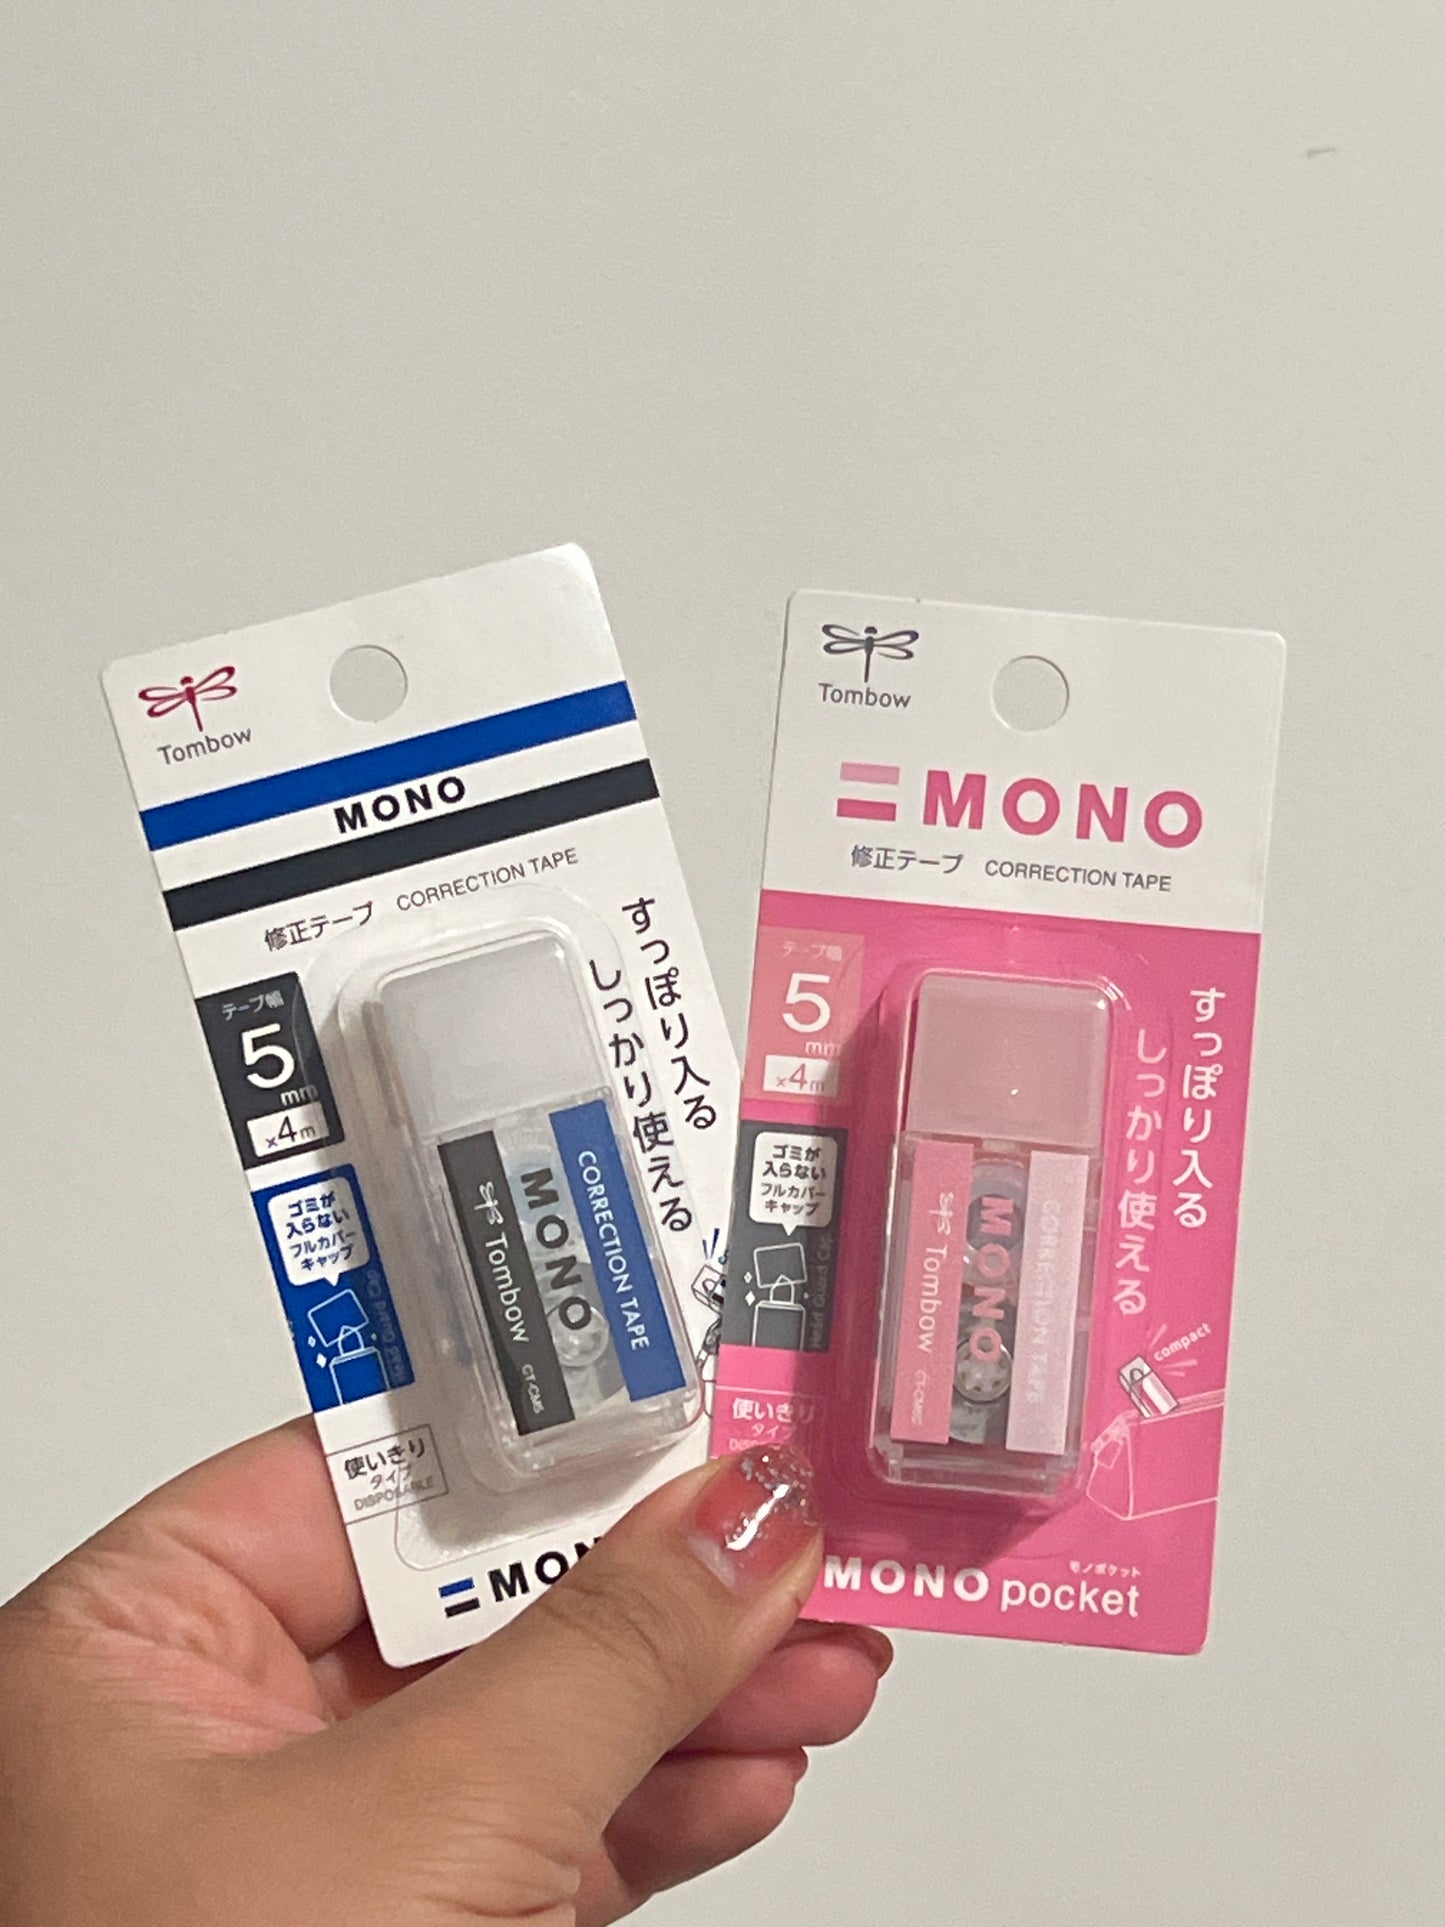 Mono Pocket Whiteout Correction Tape